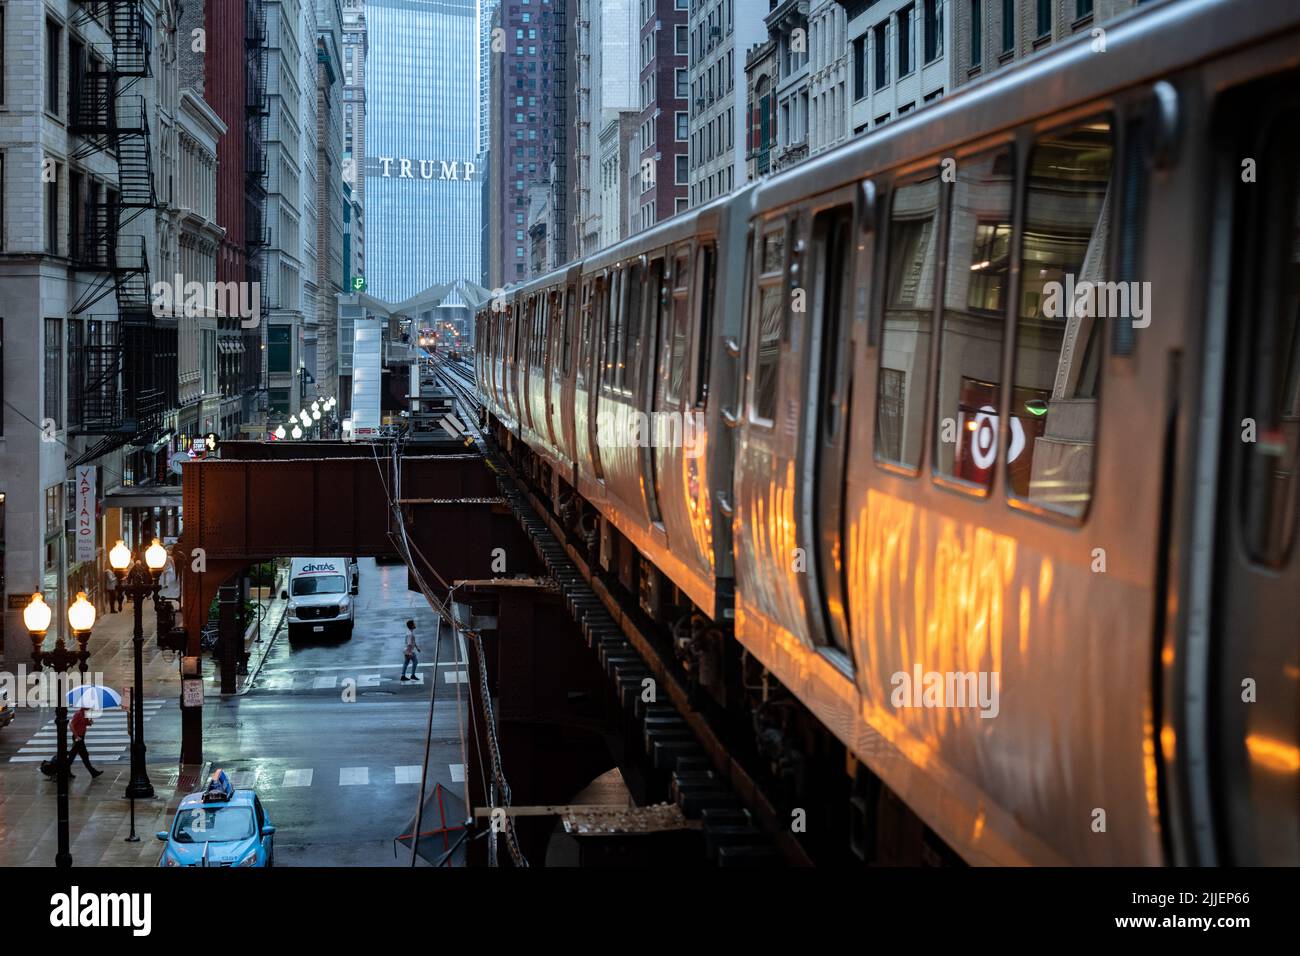 Chicago : Ottobre 10, 2018 treno su tracce elevata all'interno di edifici al loop, in vetro e acciaio ponte tra edifici - Chicago City Centre - CH Foto Stock